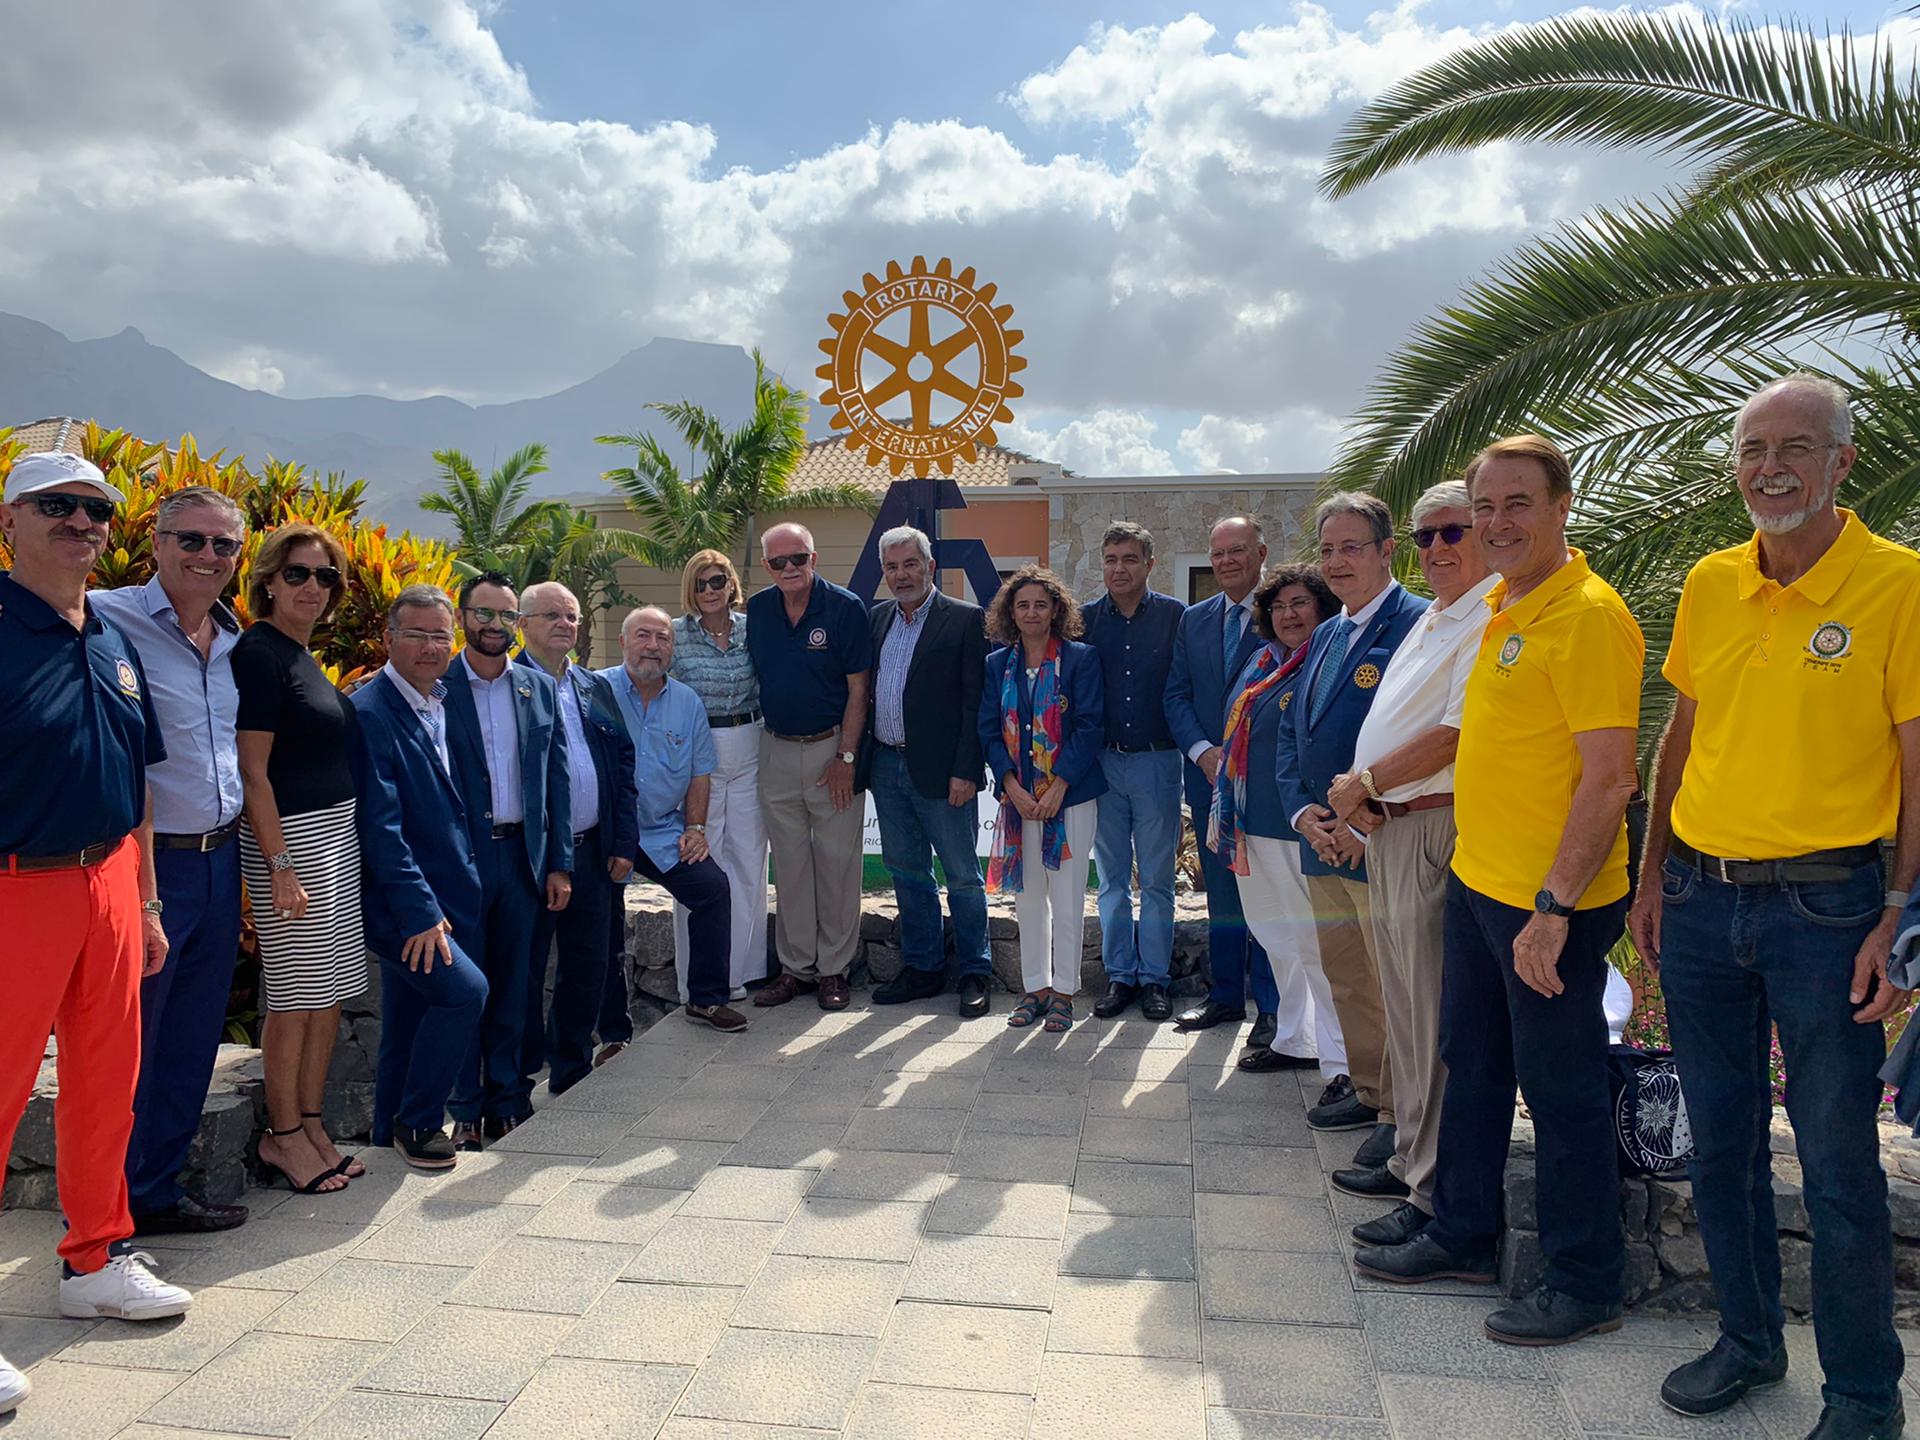 Los rotarios de Tenerife inauguran una escultura en conmemoración del 45° Campeonato Europeo de Golf Rotary